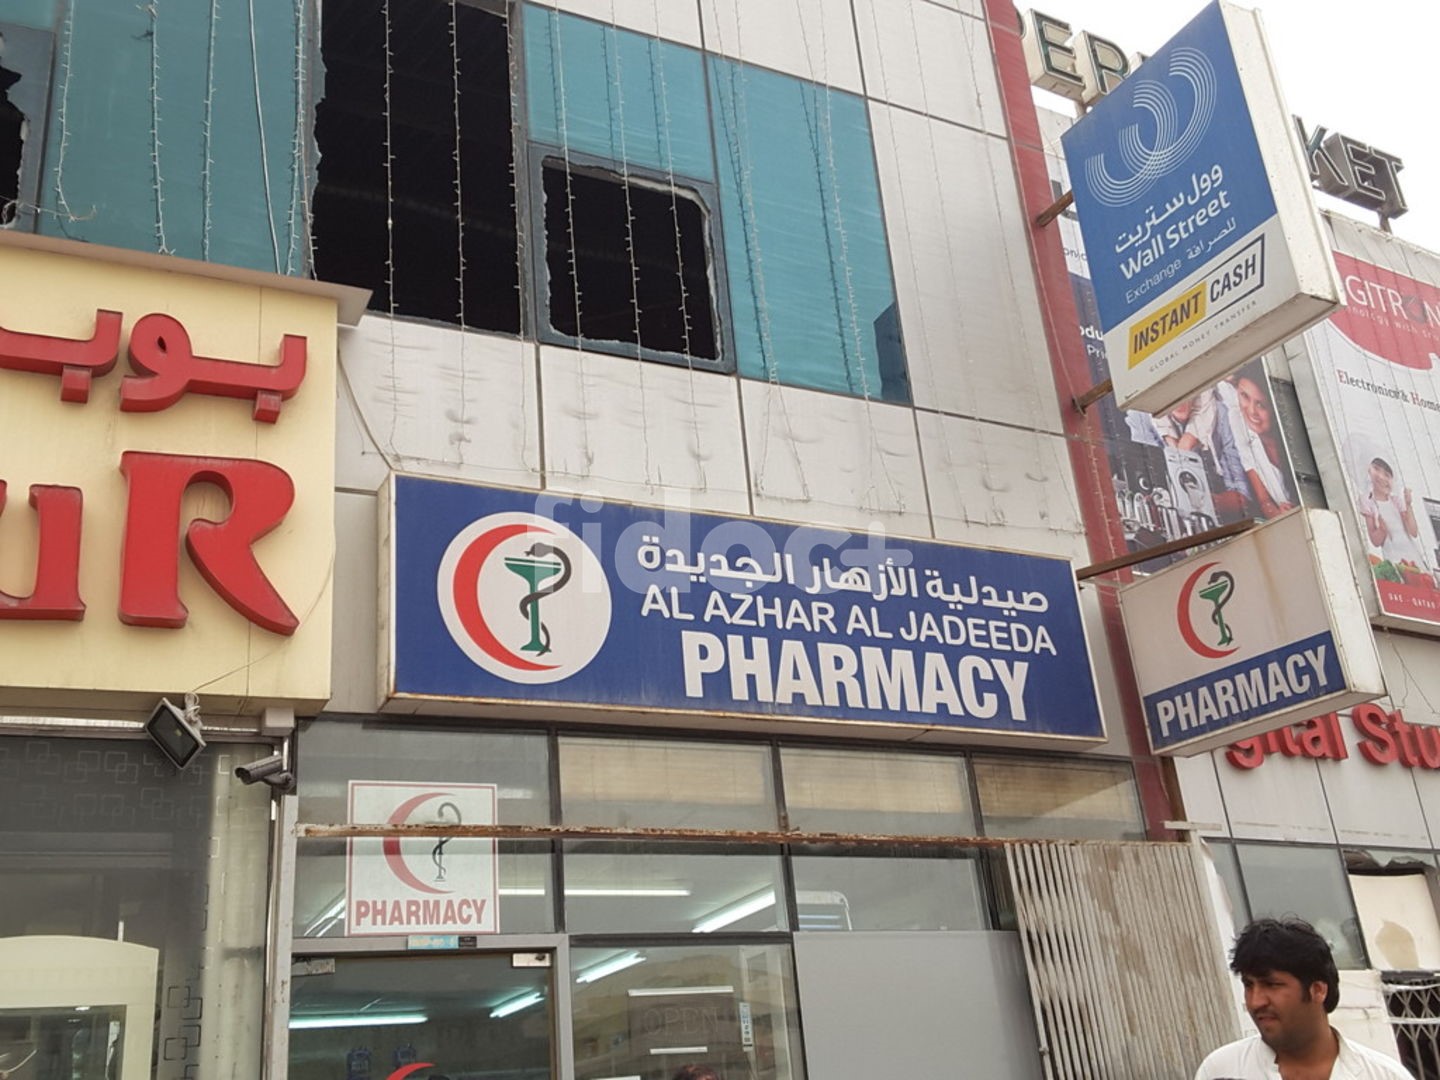 Al Azhar Al Jadeeda Pharmacy, Dubai